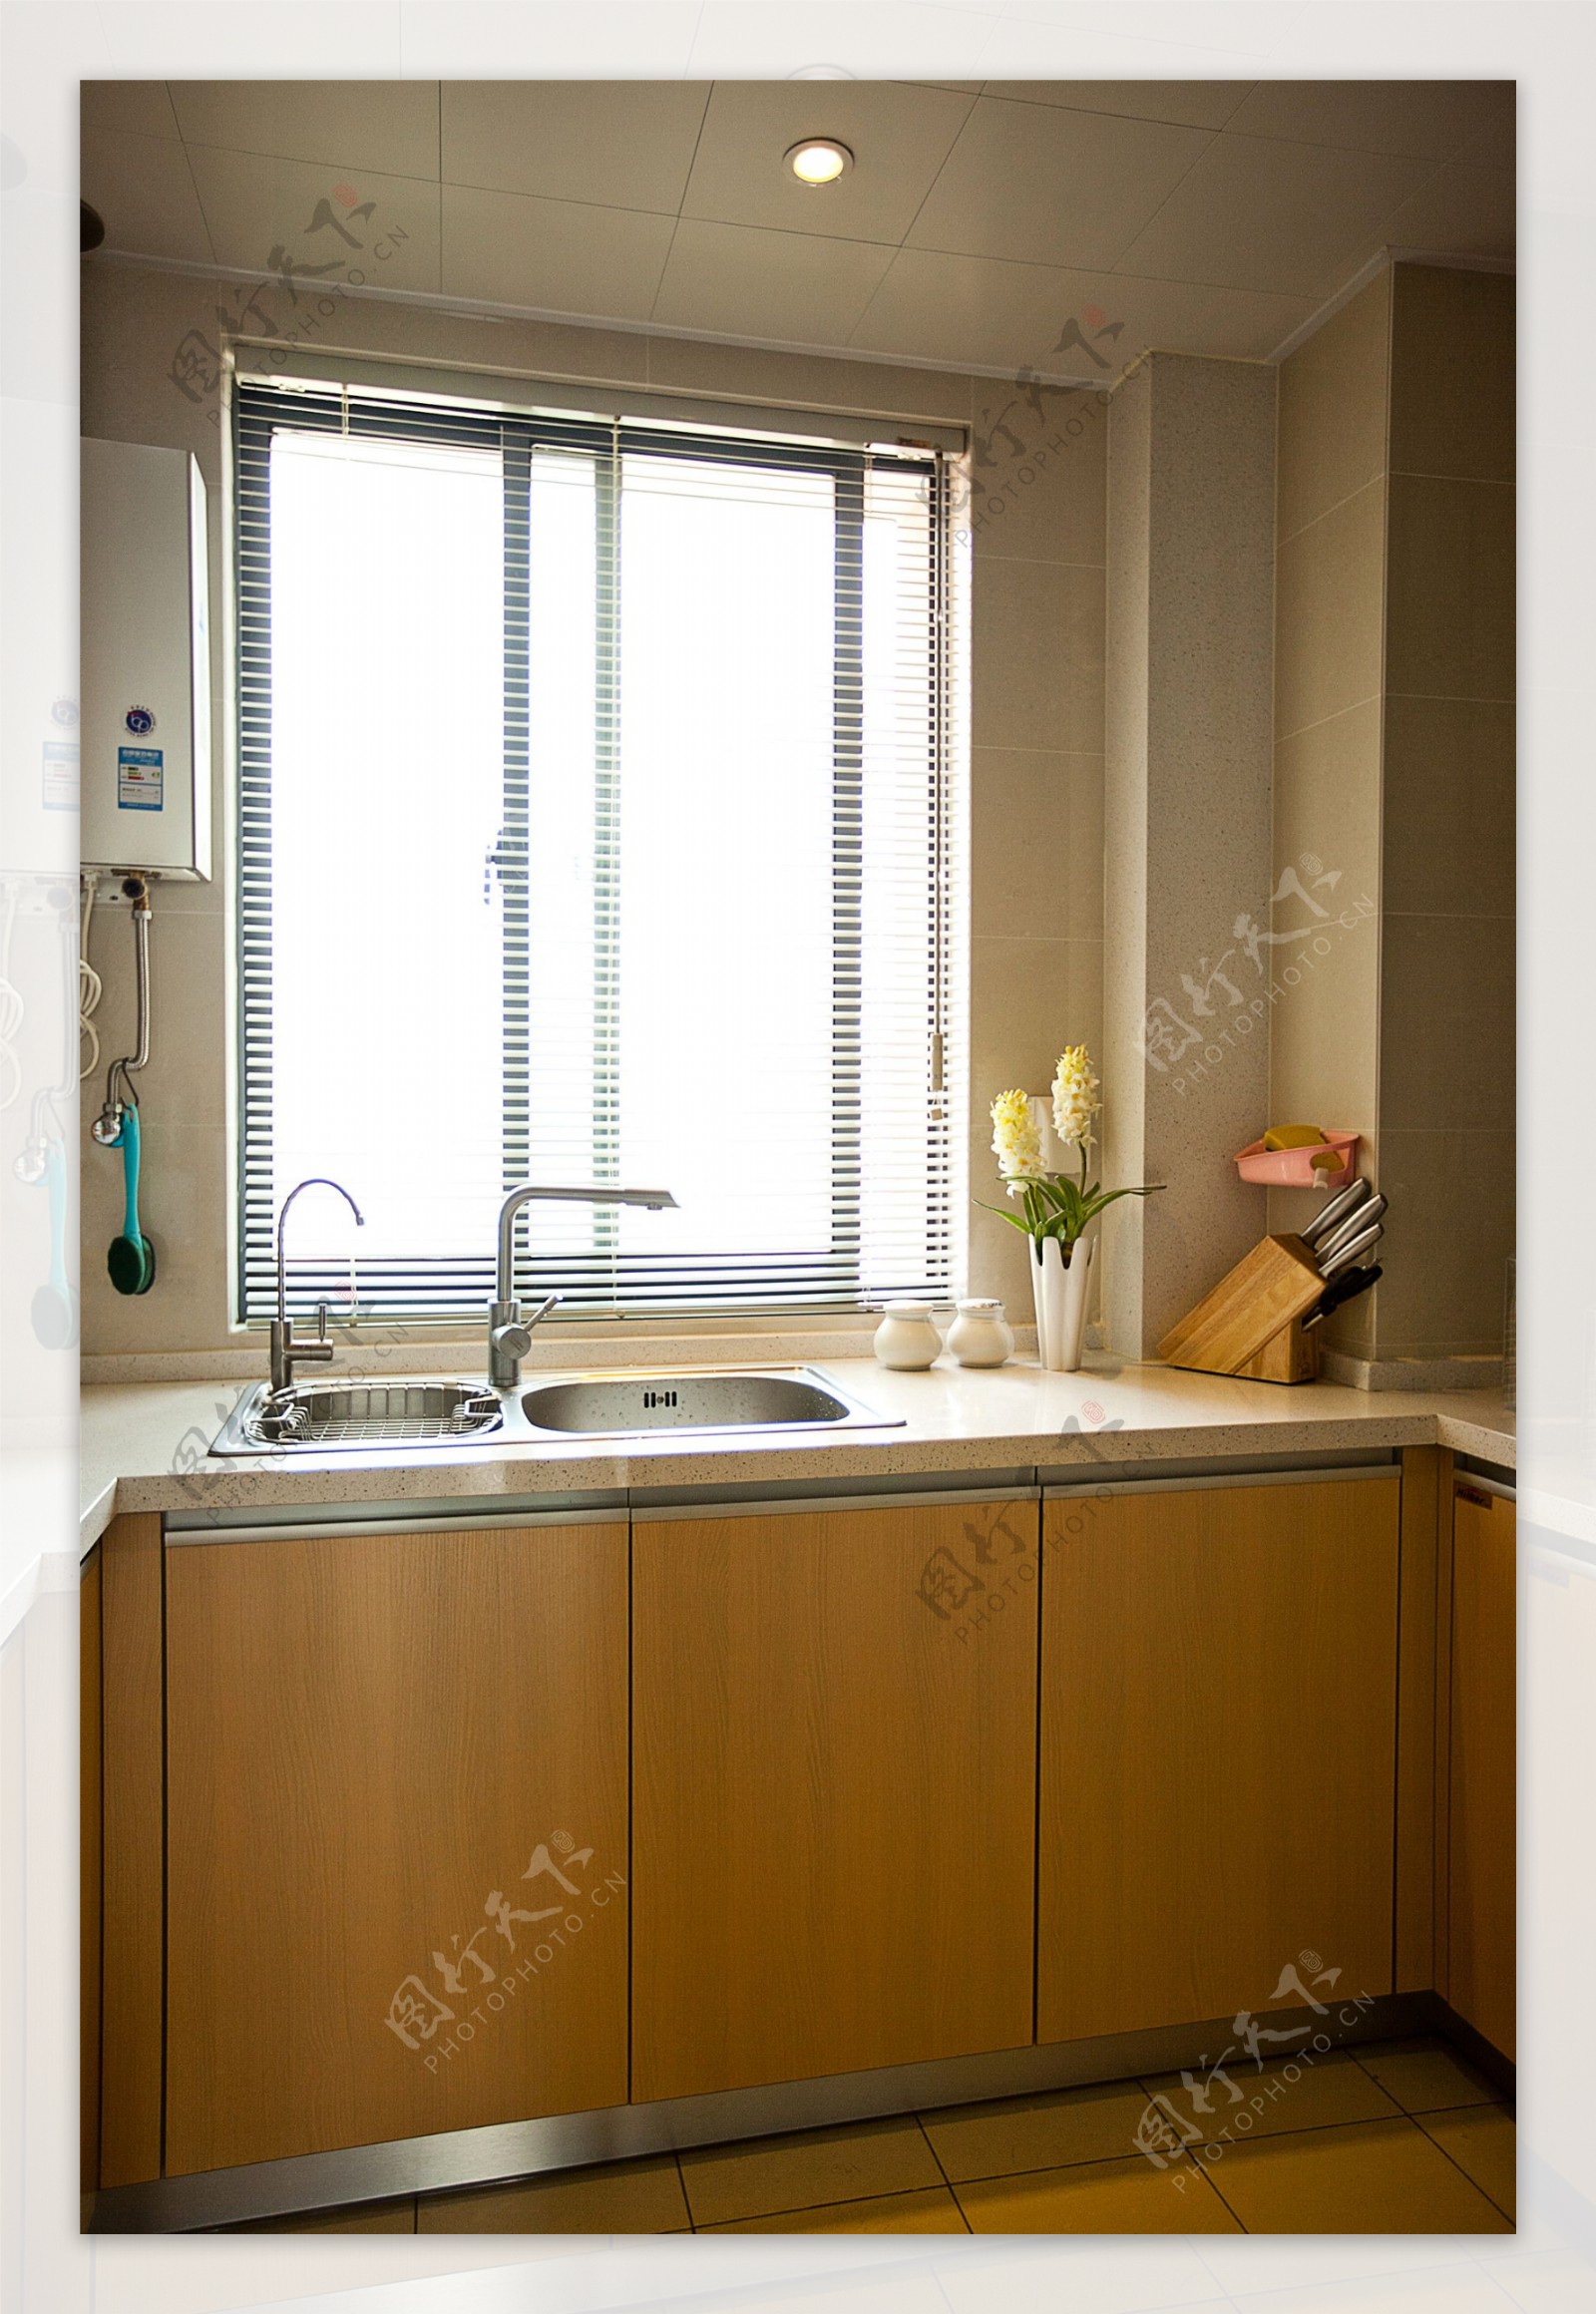 现代简约风室内设计厨房浅杏色壁柜效果图